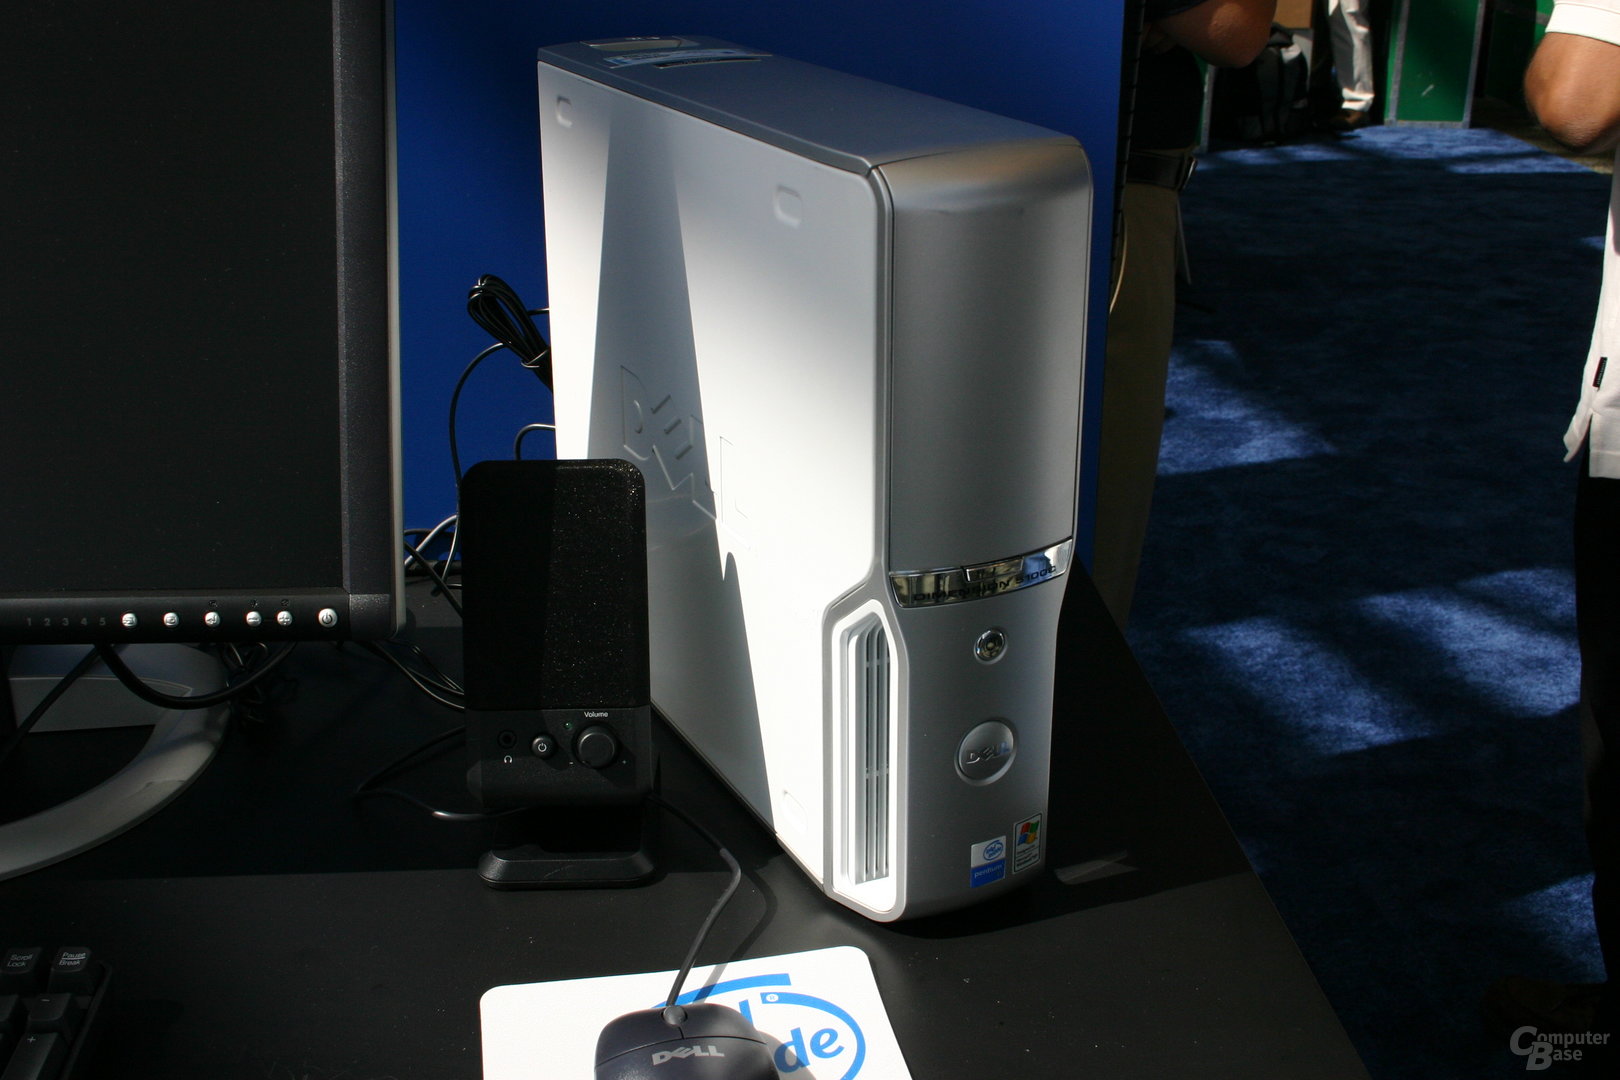 Bridgecreek Concept-PC 2006 mit Virtualisierungs-Technologie